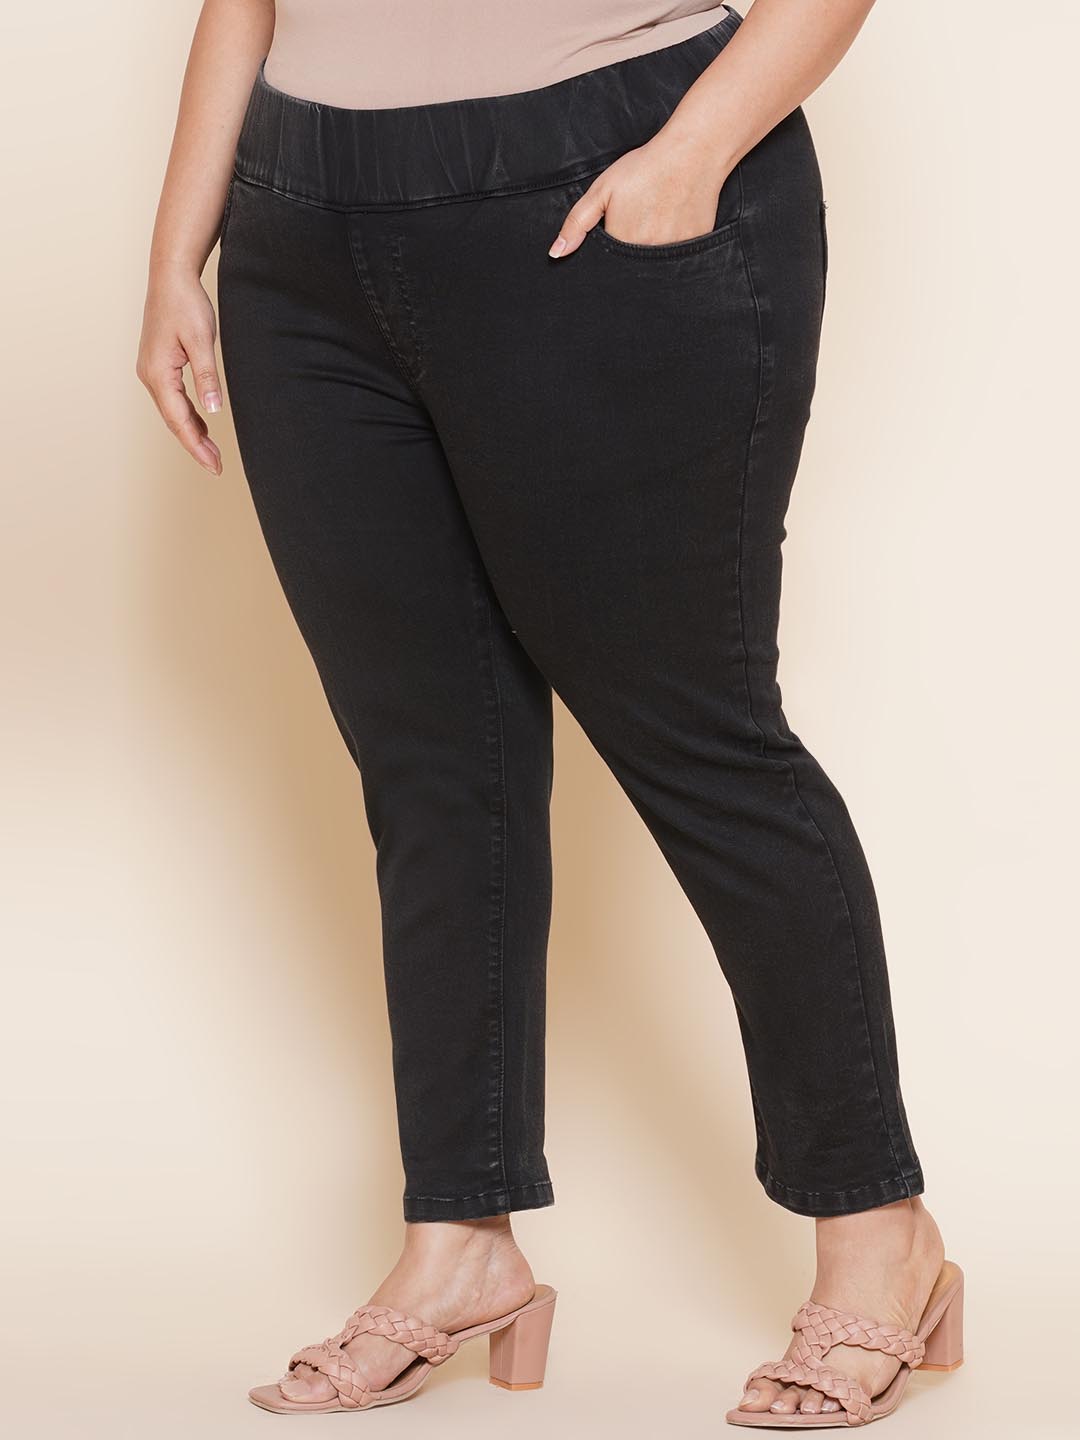 bottomwear_kiaahvi/jeans/KIJ6003/kij6003-3.jpg